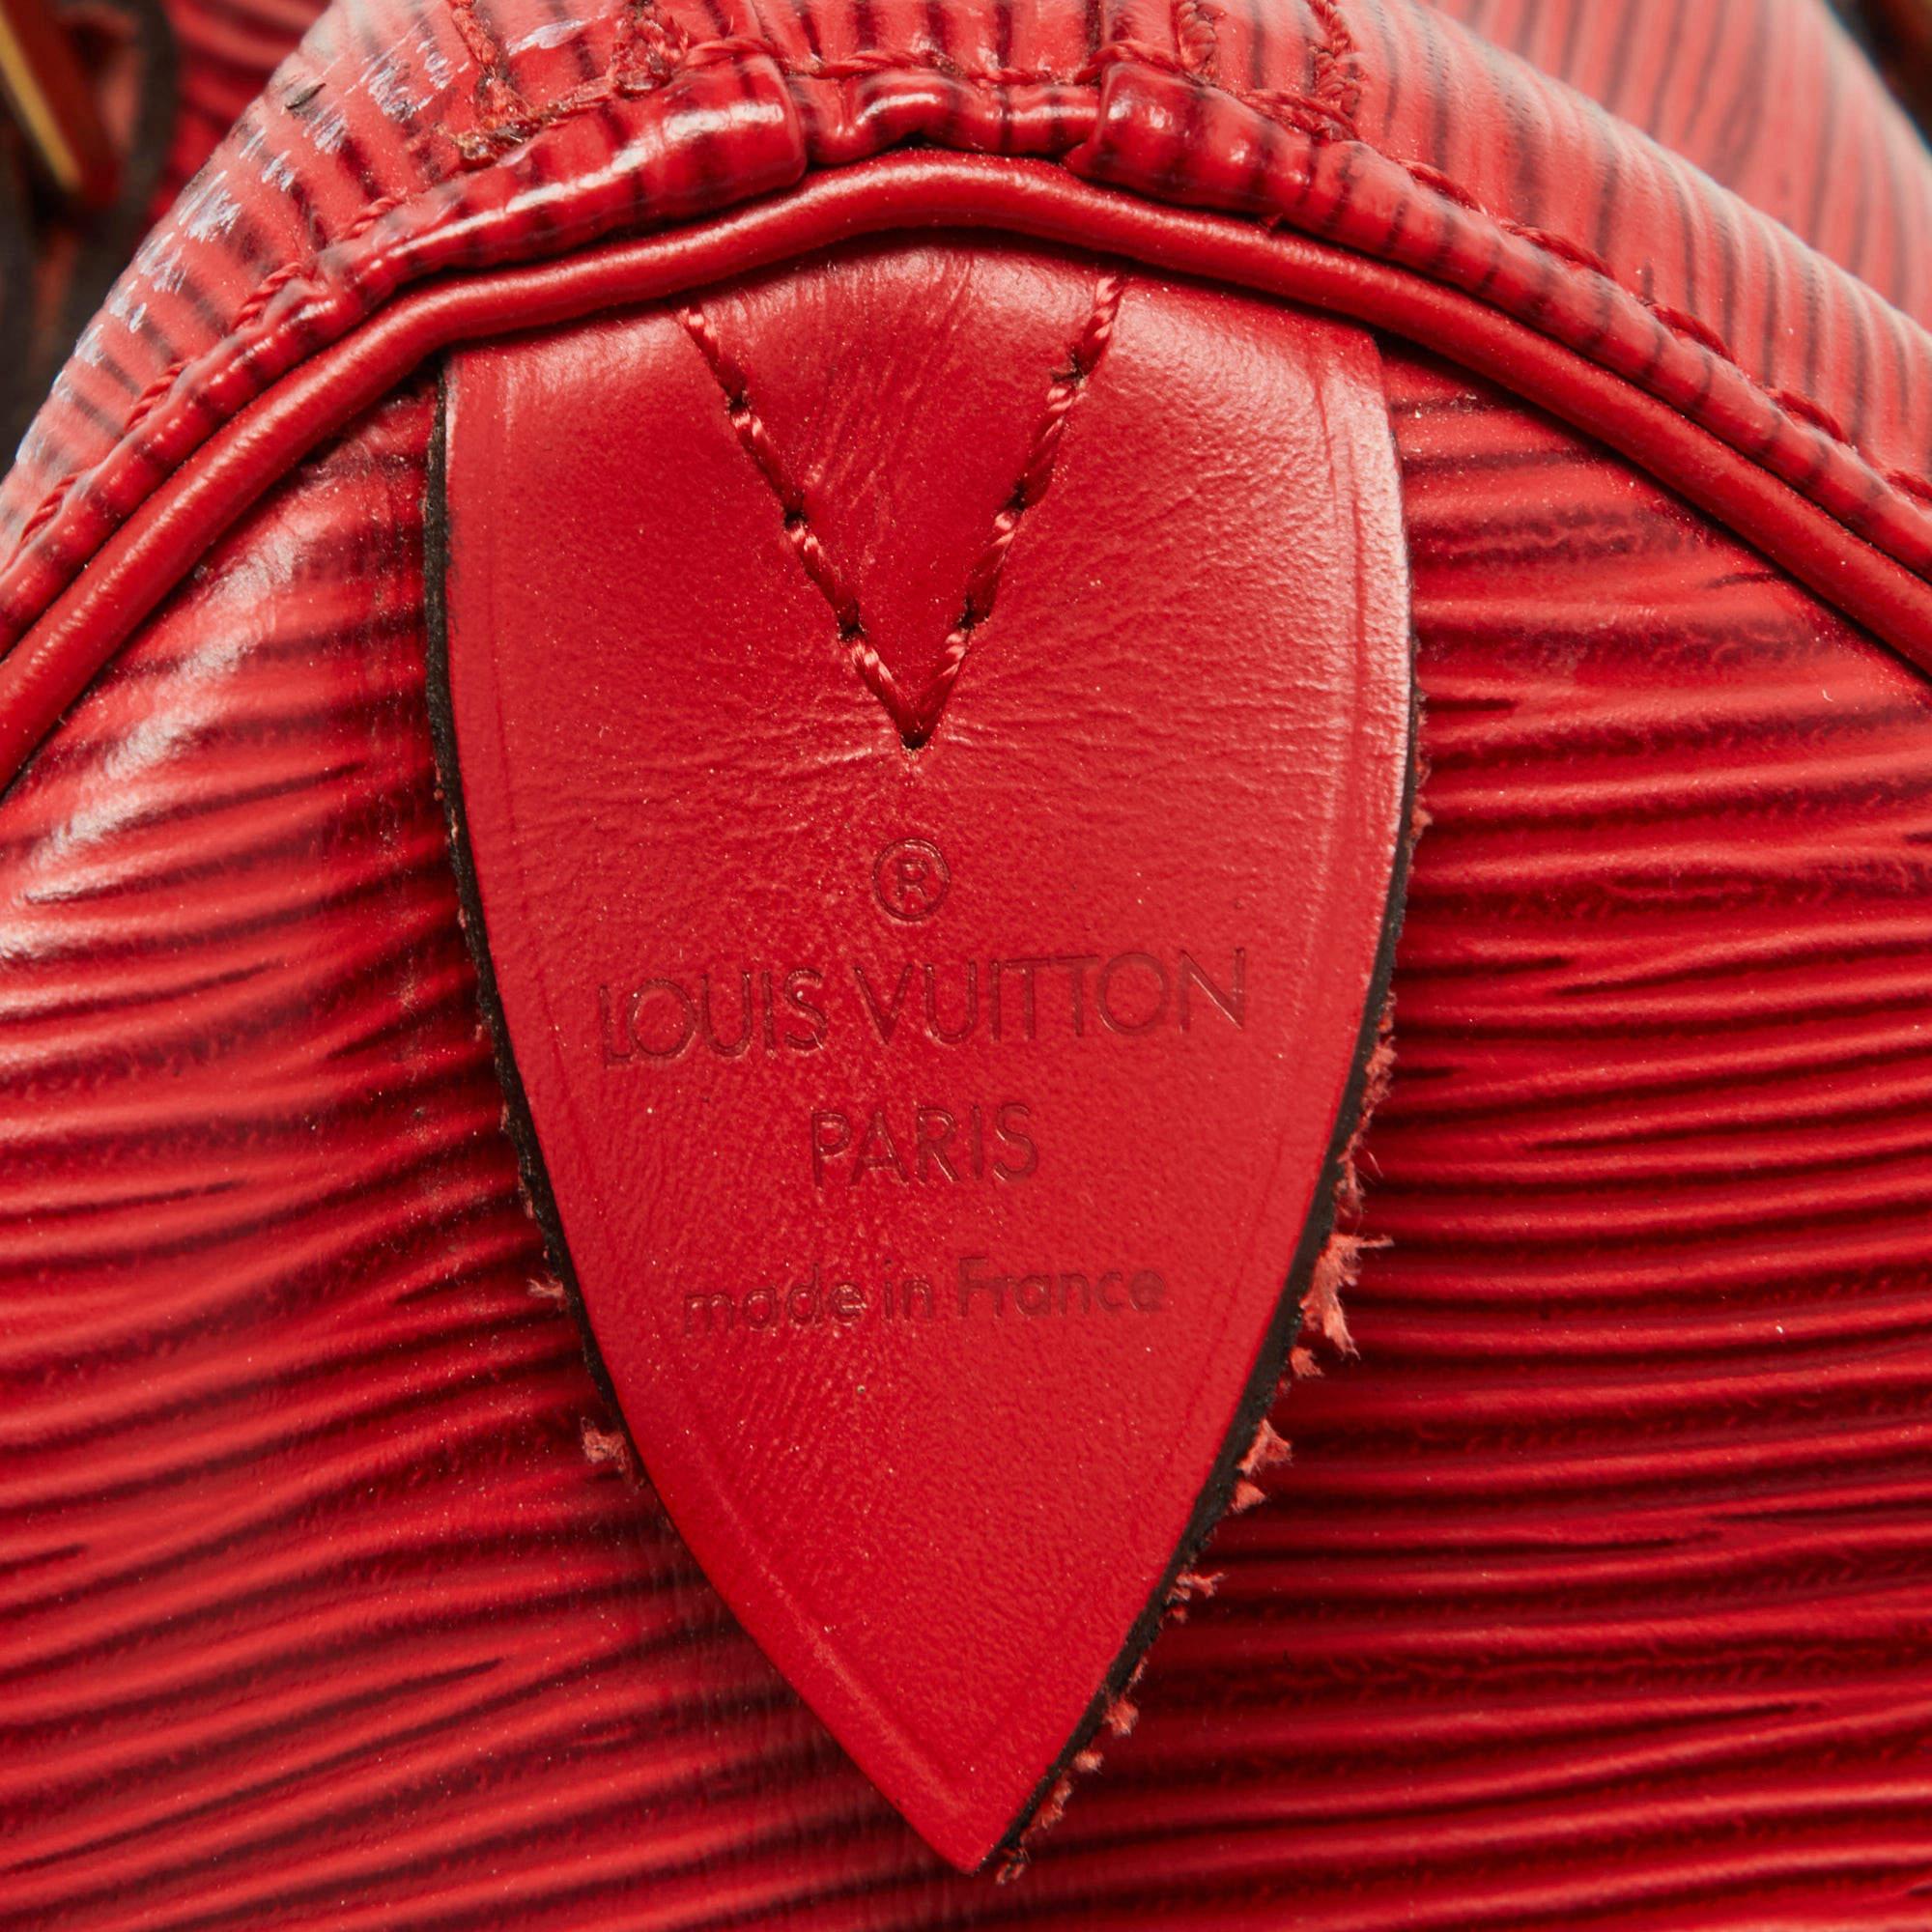 Louis Vuitton Red Epi Leather Speedy 25 Bag 10